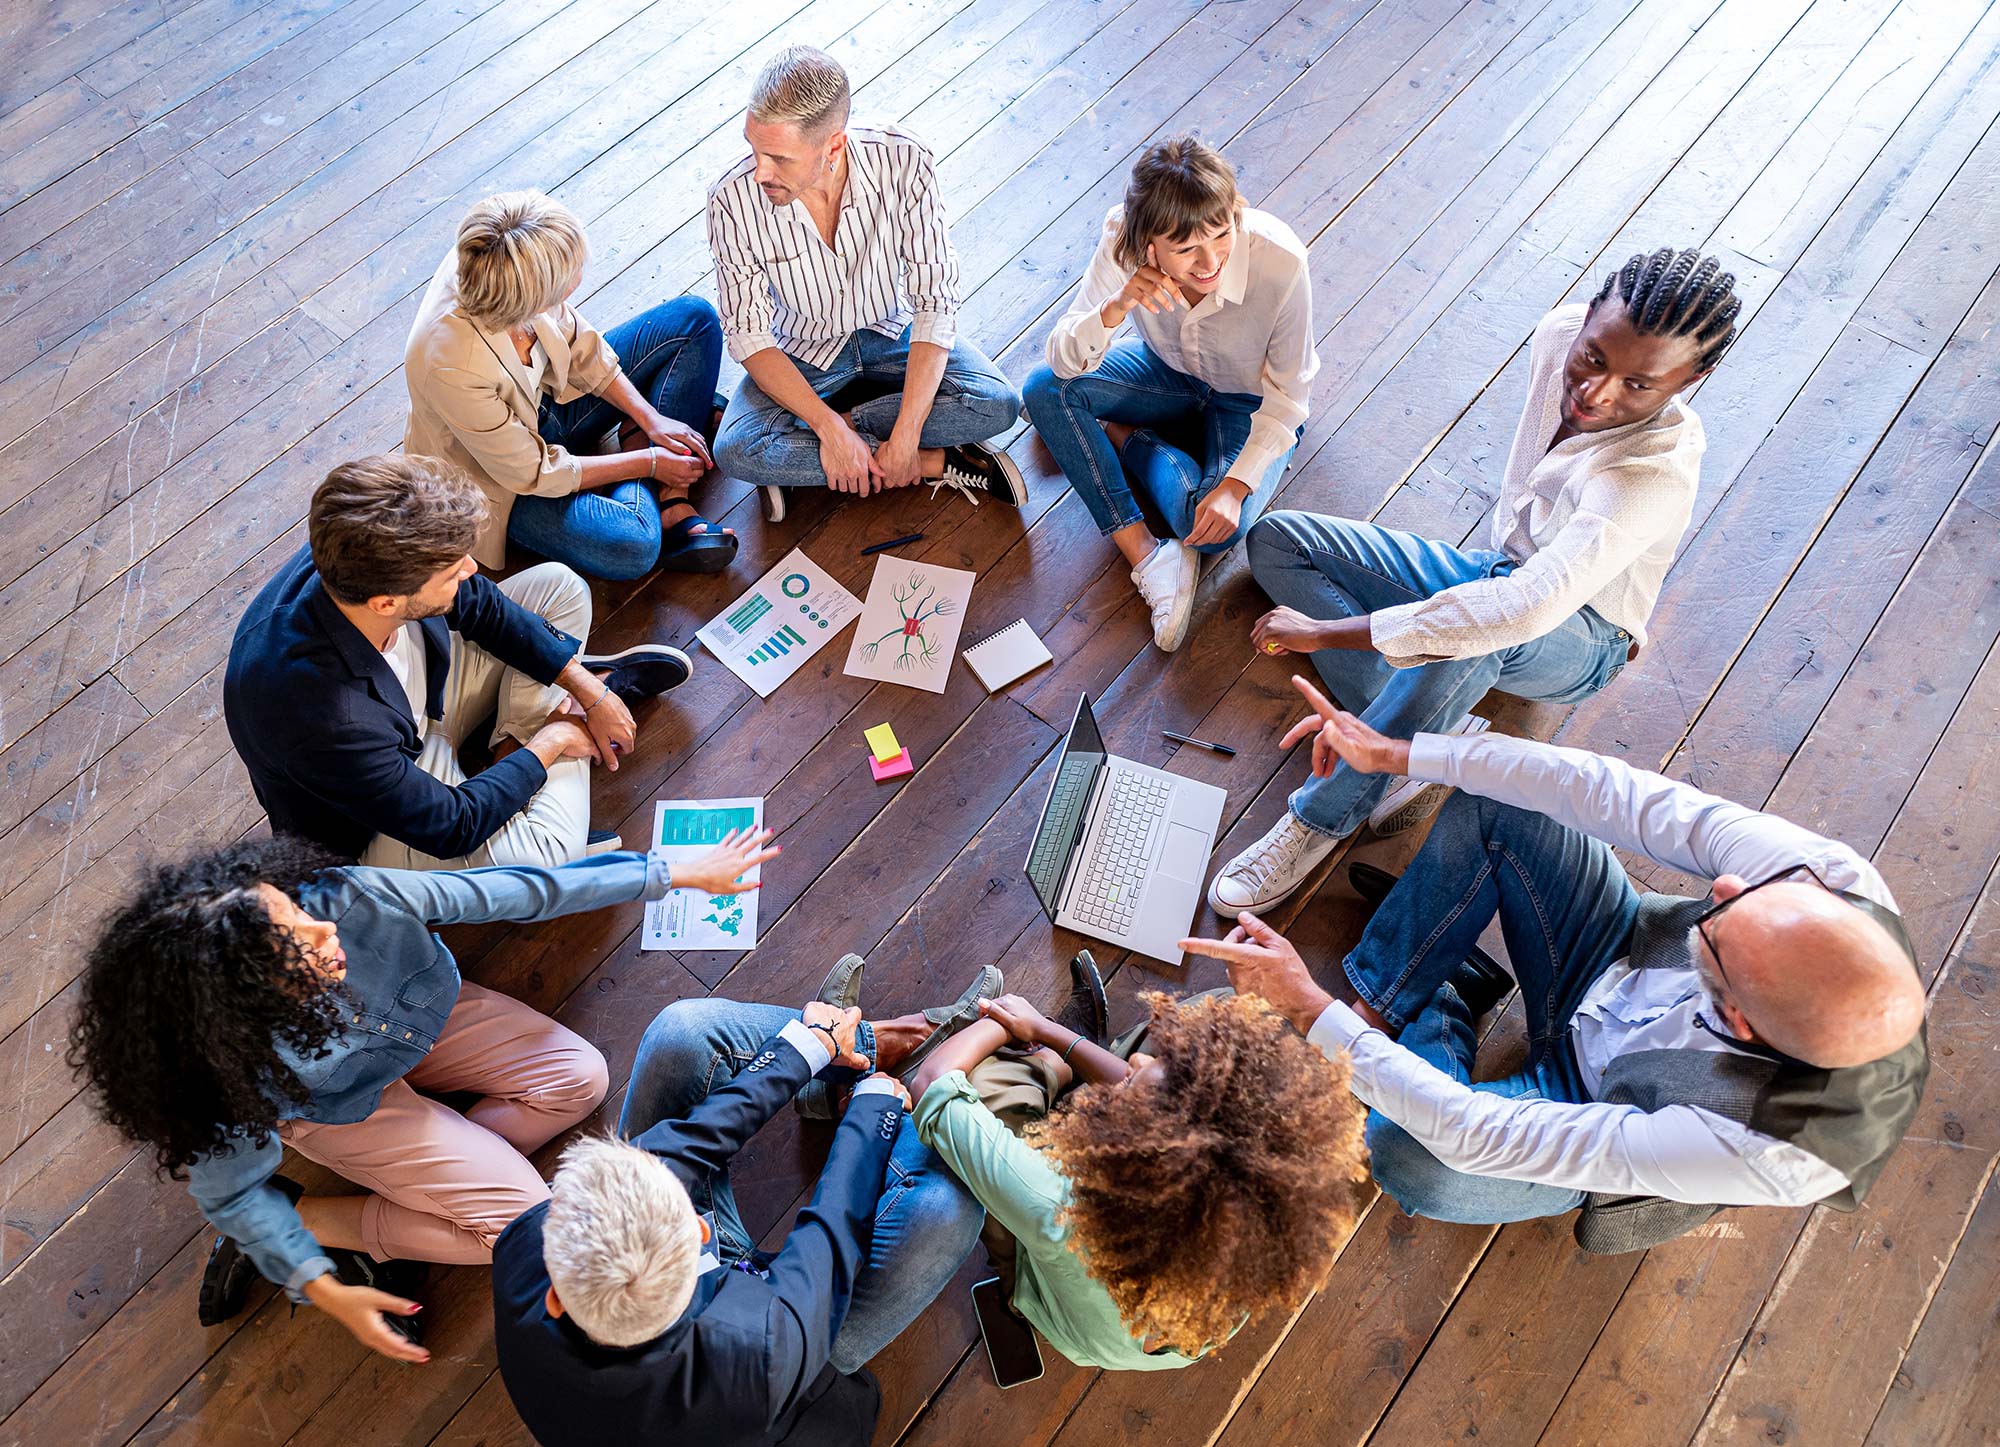 Neun Personen sitzen auf einem Holzboden im Kreis und halten eine Besprechung ab.